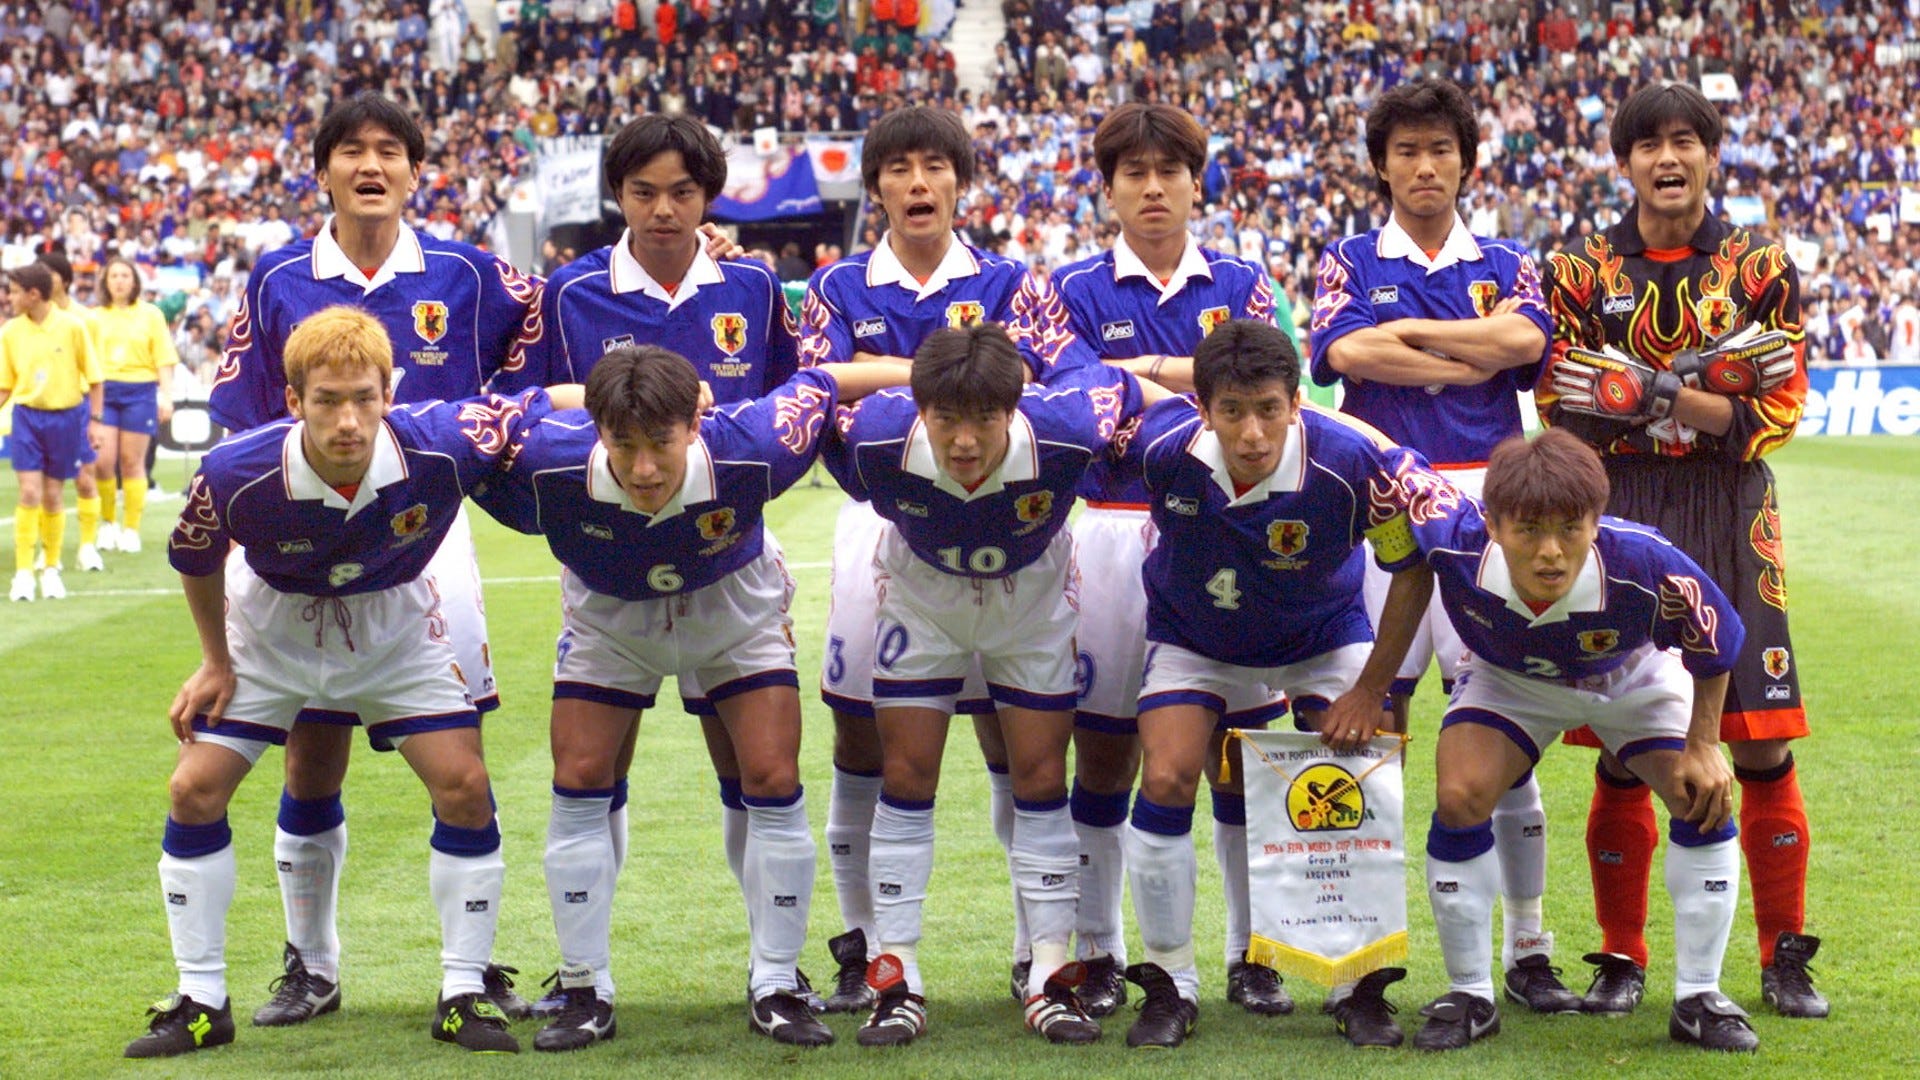 1998年 W杯 フランス代表 ユニフォーム - ウェア